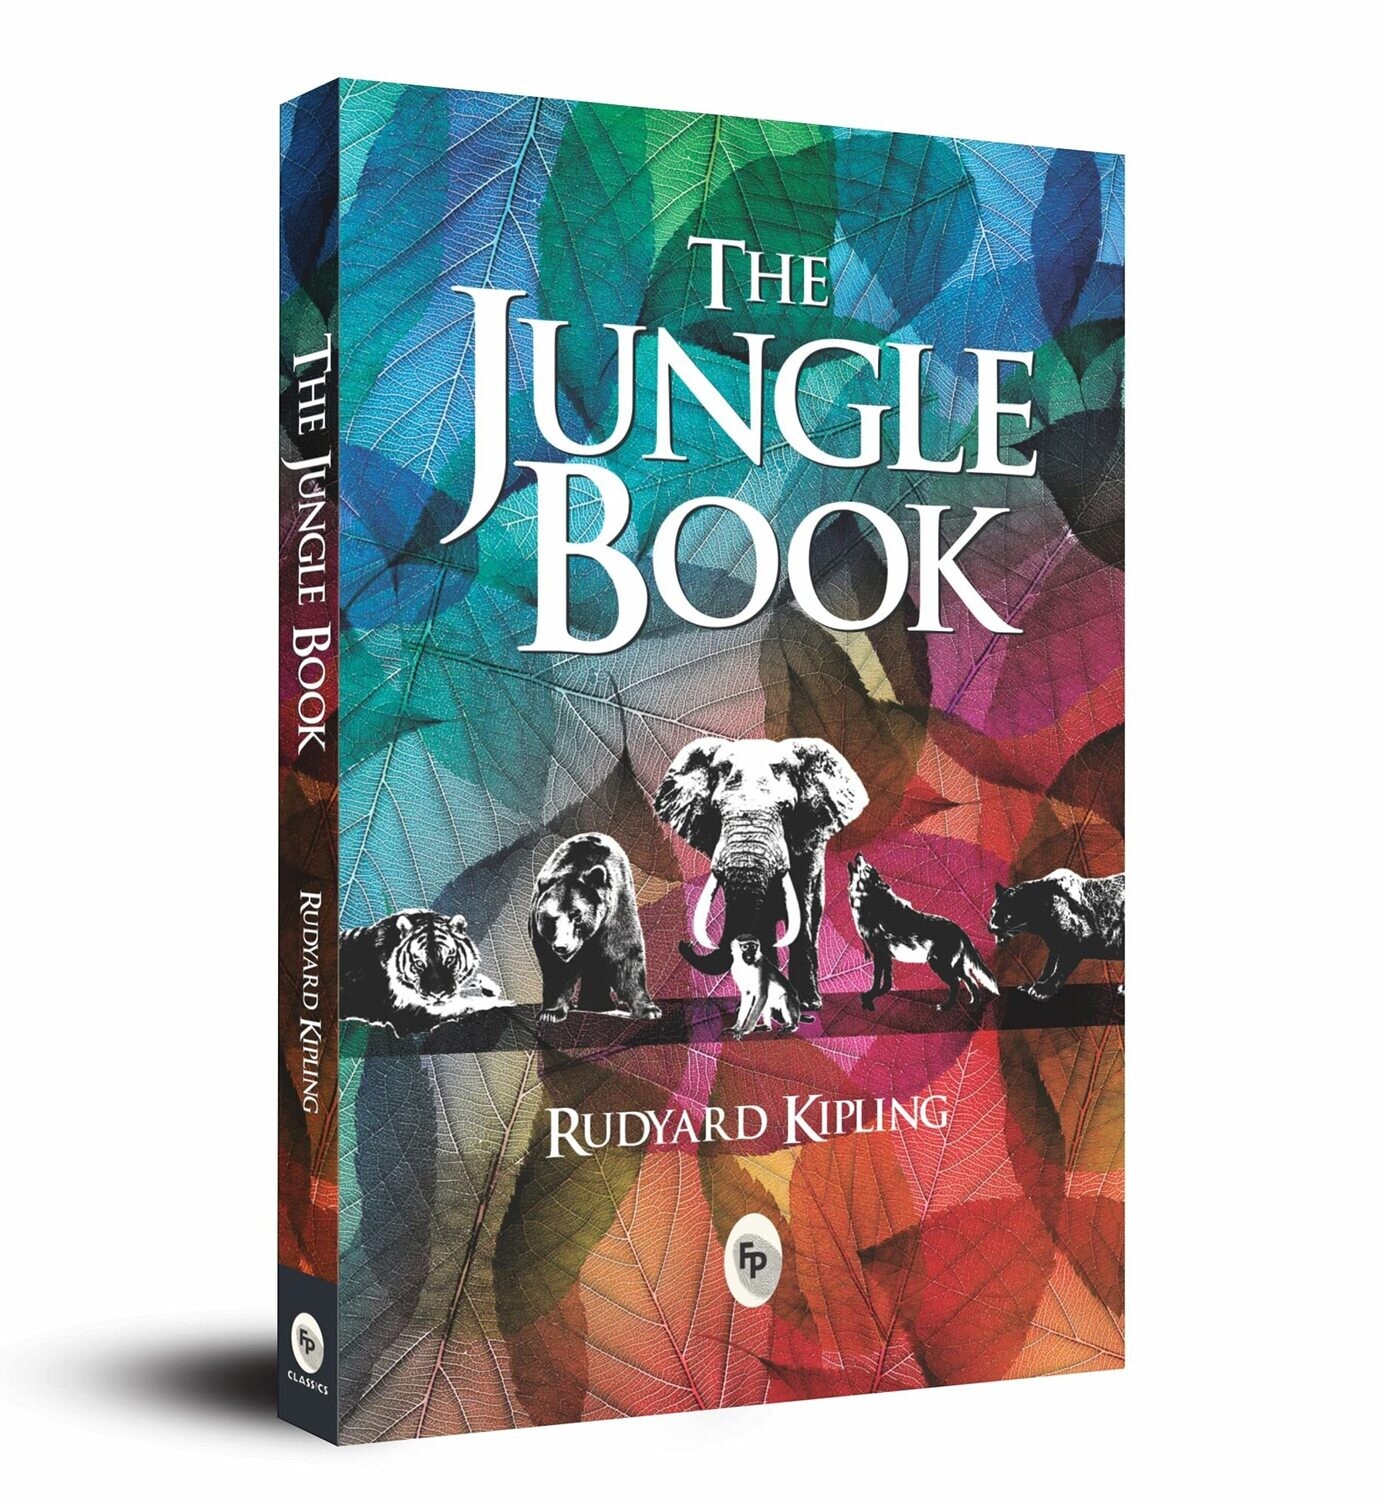 THE JUNGLE BOOK - RUDYARD KIPLING